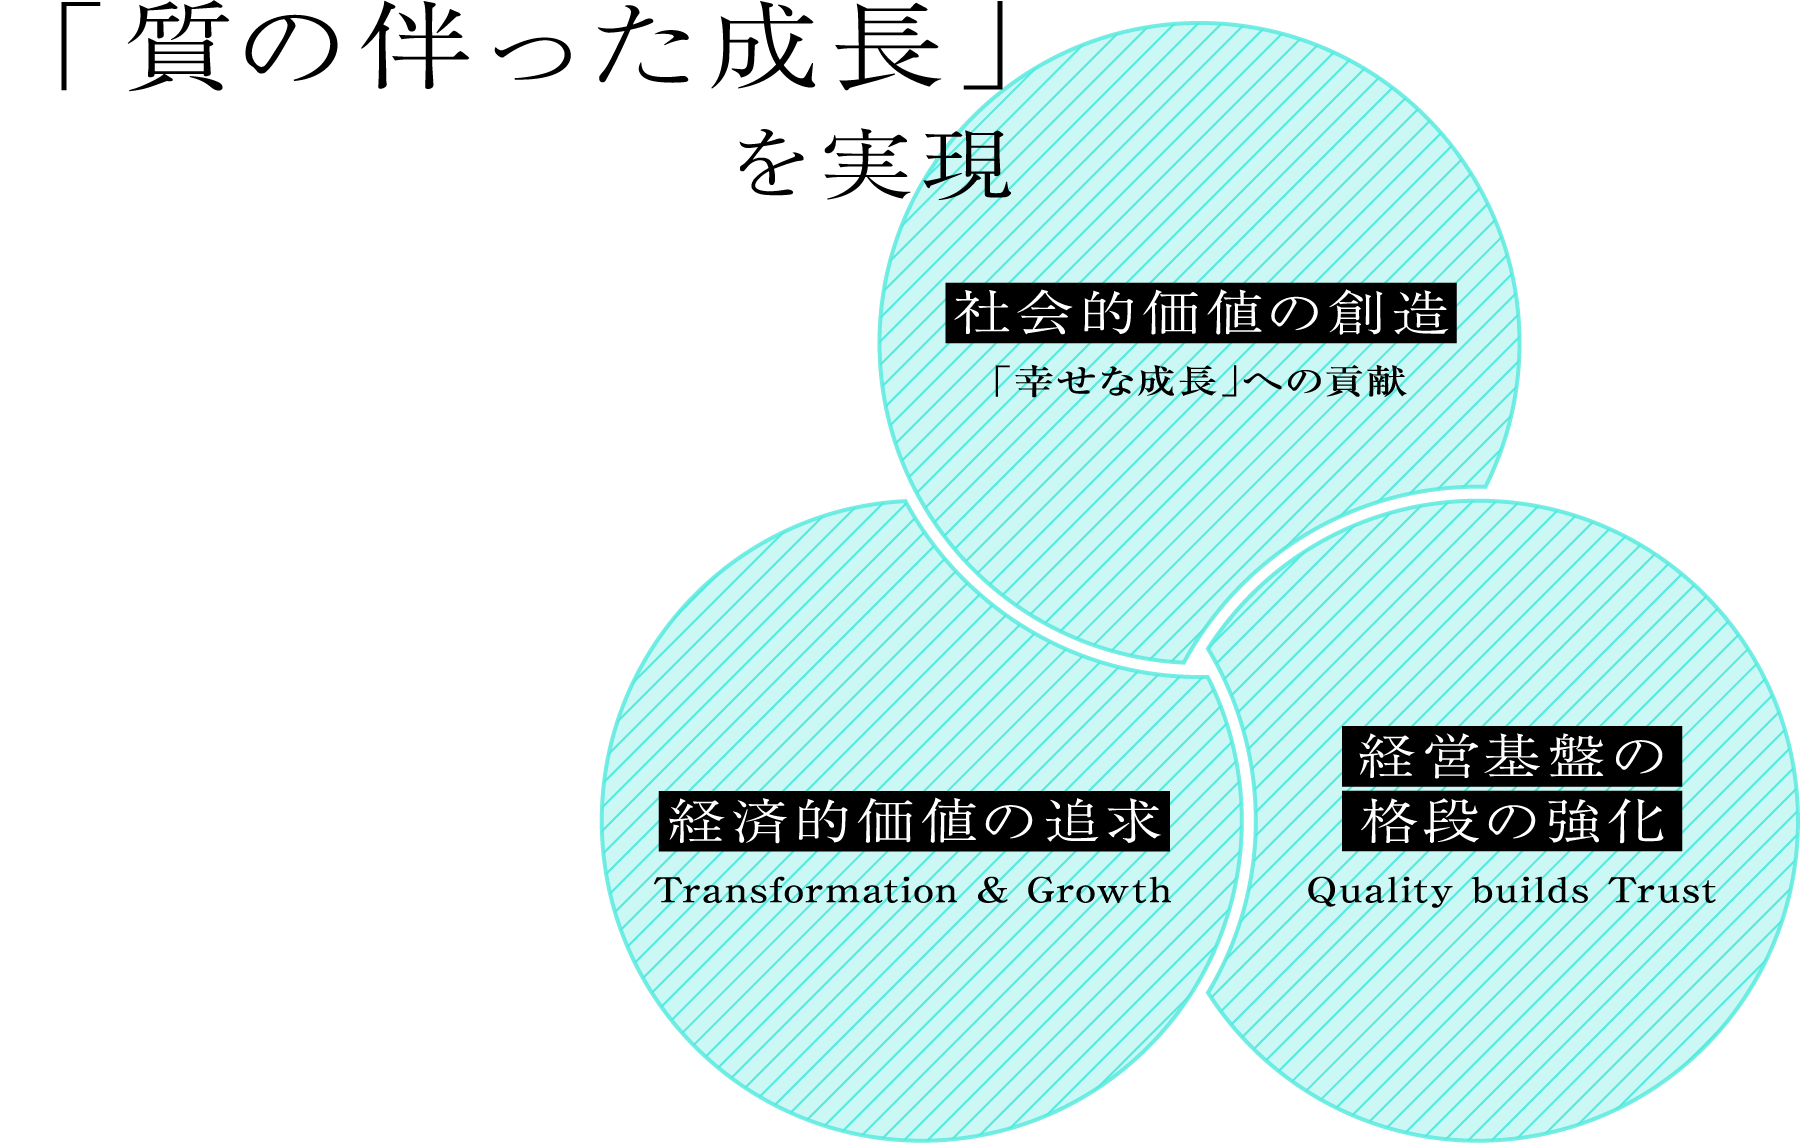 「質の伴った成長」 を実現 社会的価値の創造「幸せな成長」への貢献 経済的価値の追求 Transformation & Growth 経営基盤の格段の強化 Quality builds Trust